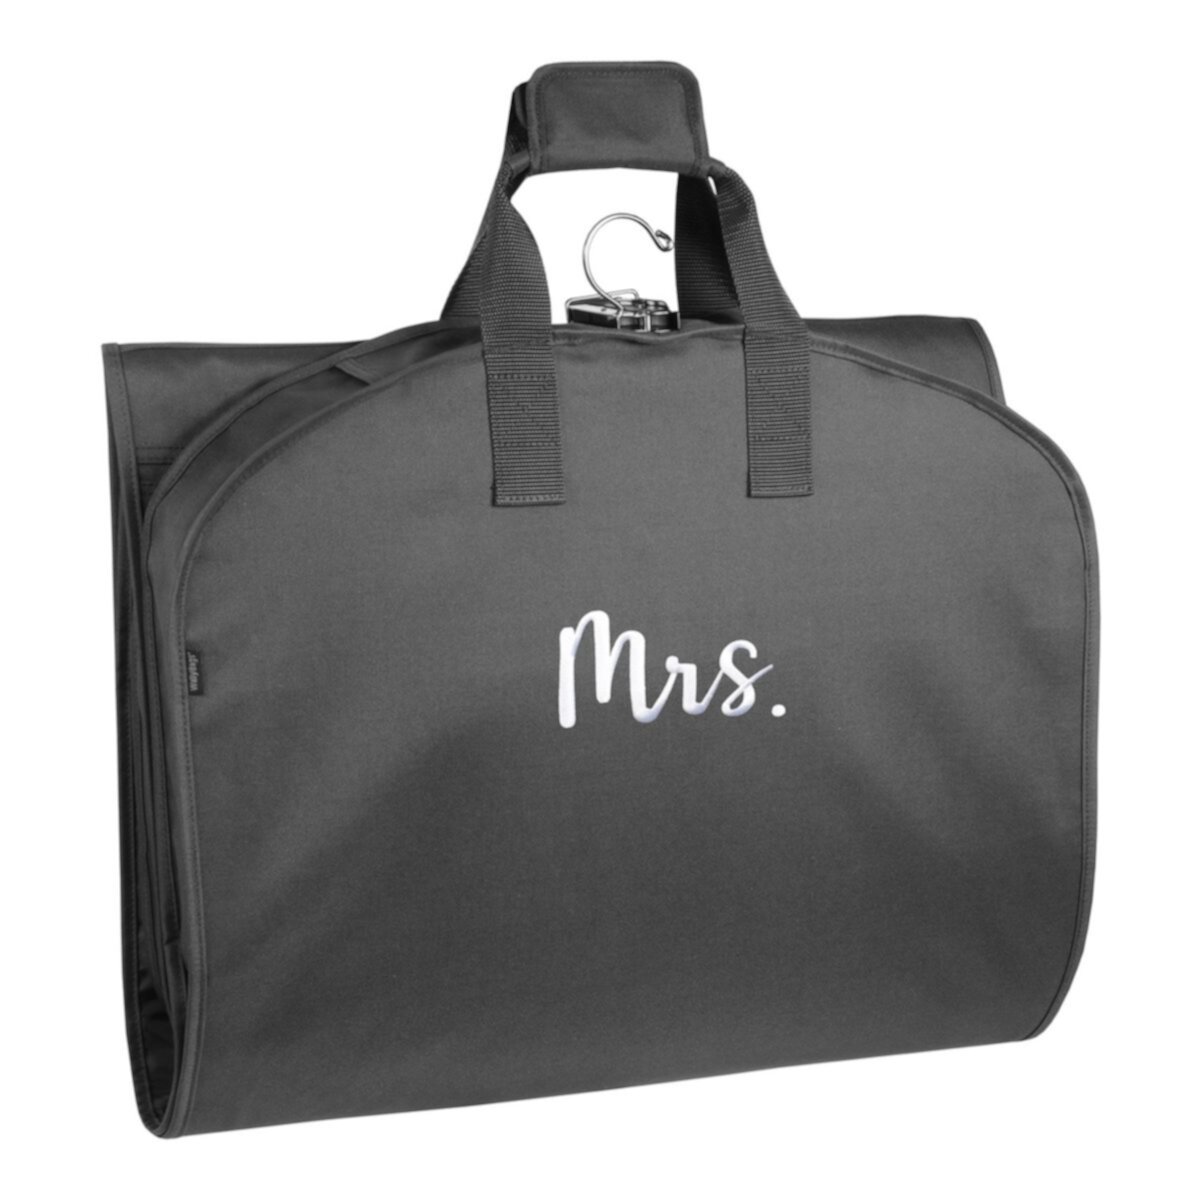 60-дюймовая дорожная сумка для одежды премиум-класса WallyBags Trifold с карманом и вышивкой Mrs. WallyBags